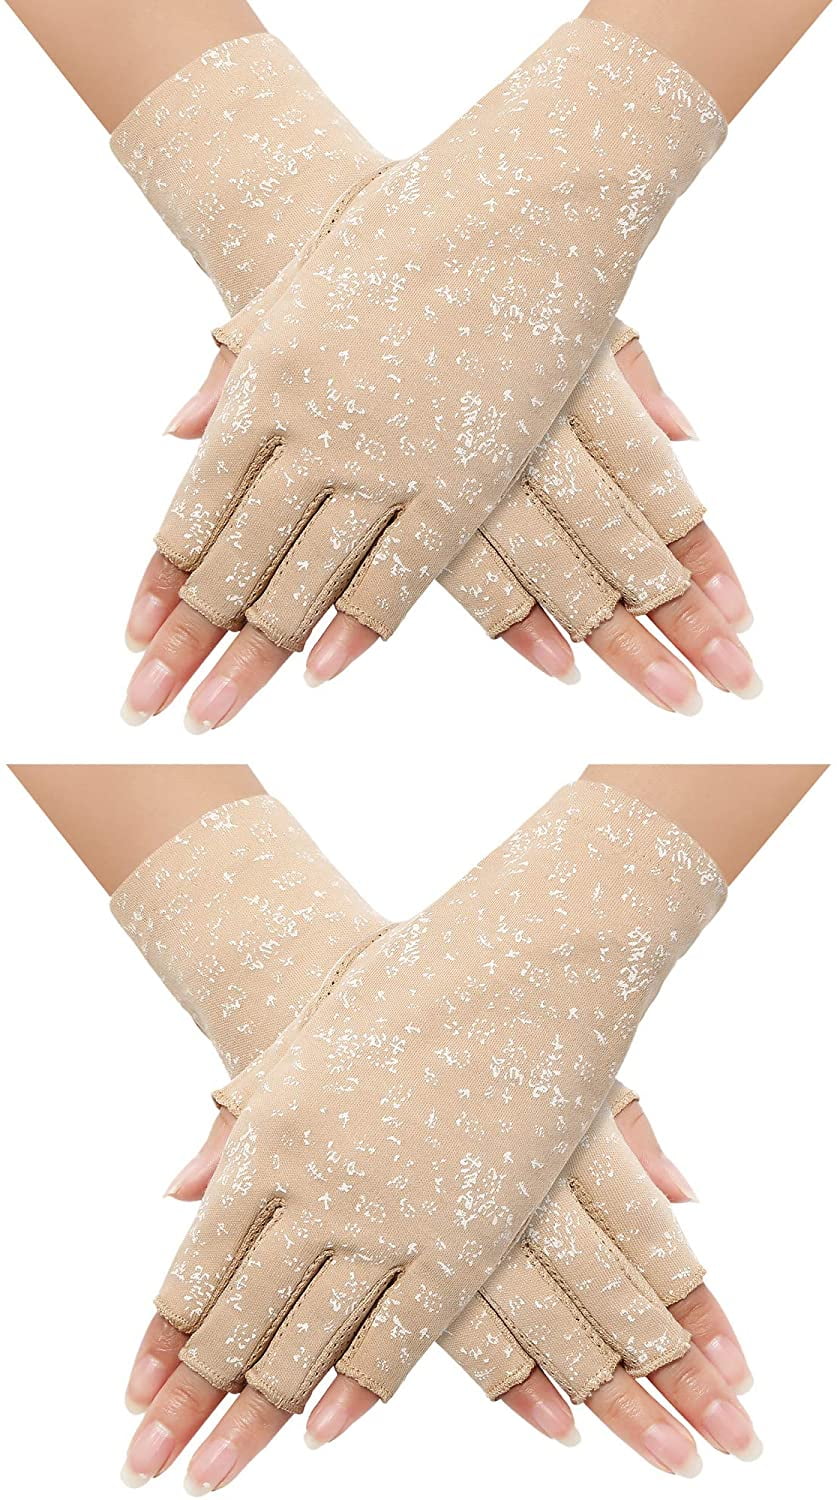 3 Pairs Summer UV Protection Sunblock Gloves Non-Slip Touchscreen Driving Gloves Letter Gloves for Women Girls Black, Gray, Beige 